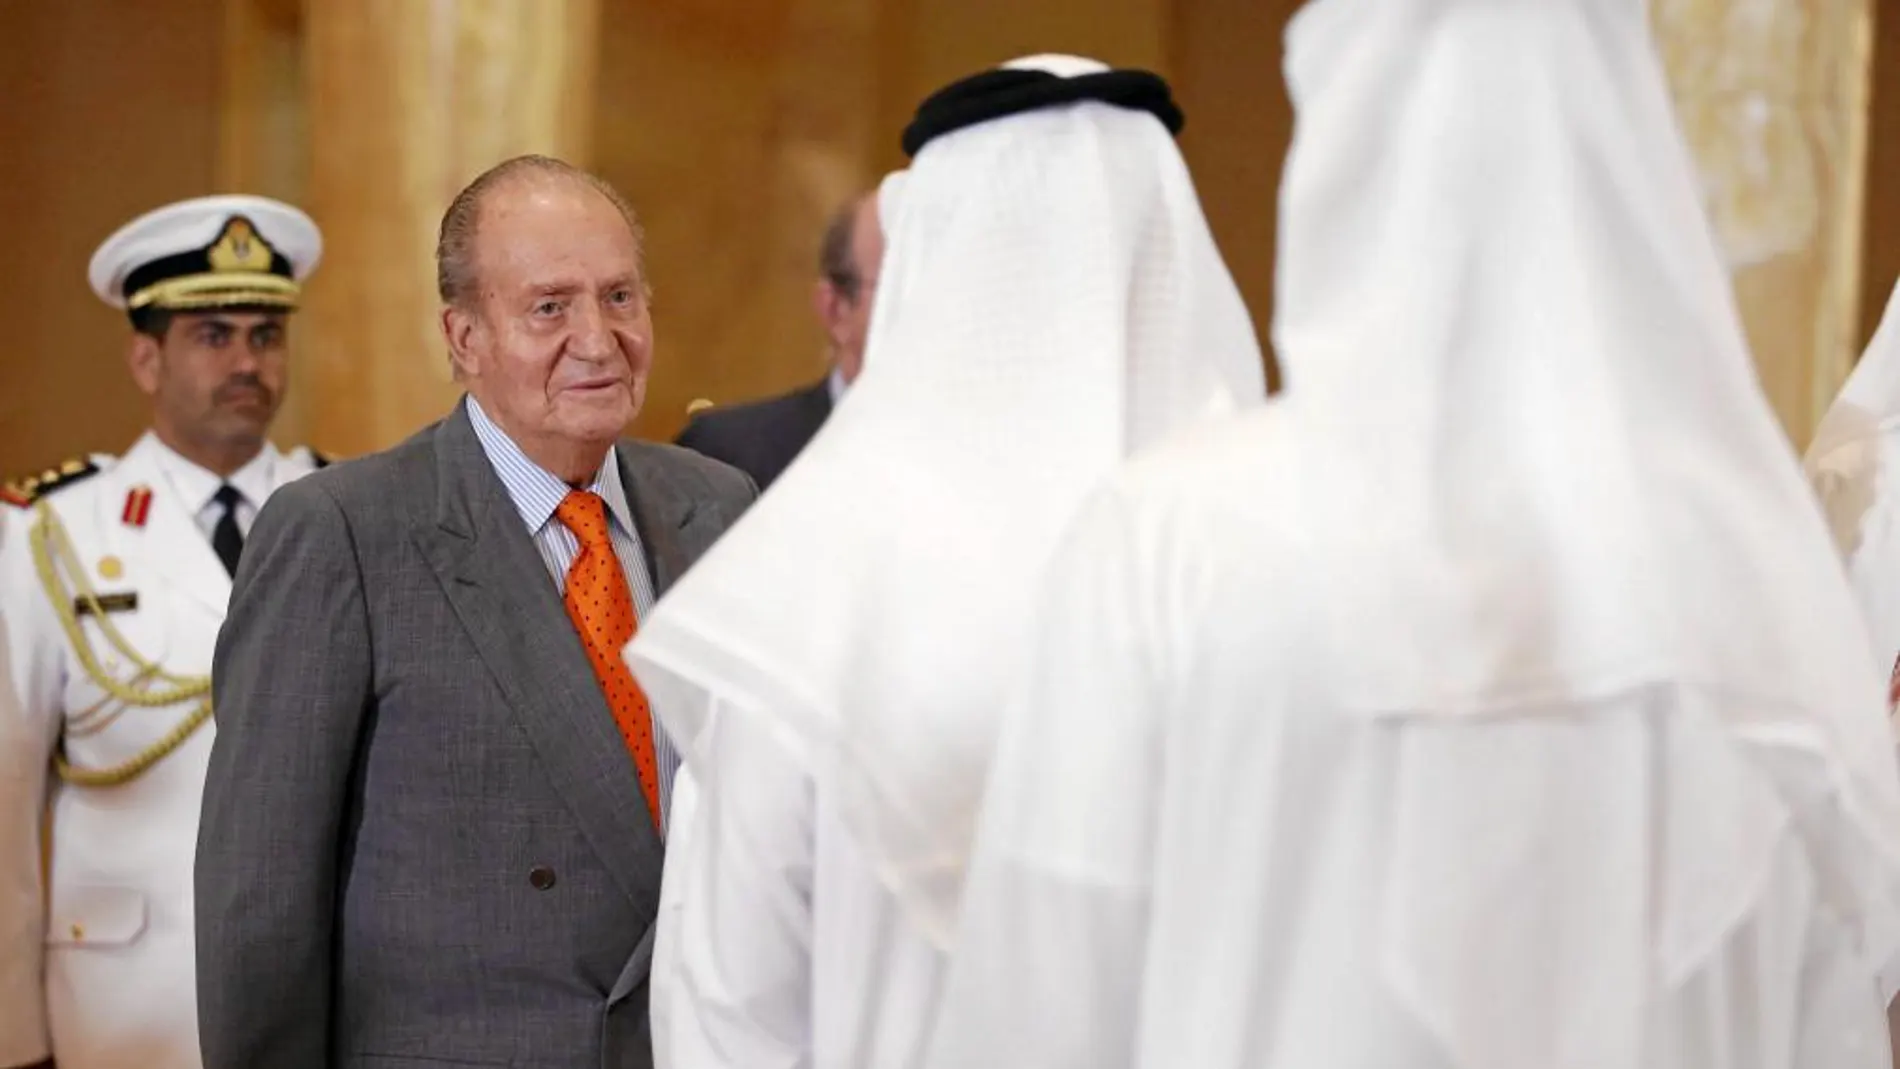 Don Juan Carlos, en los Emiratos Árabes, durante su último viaje oficial al Golfo Pérsico